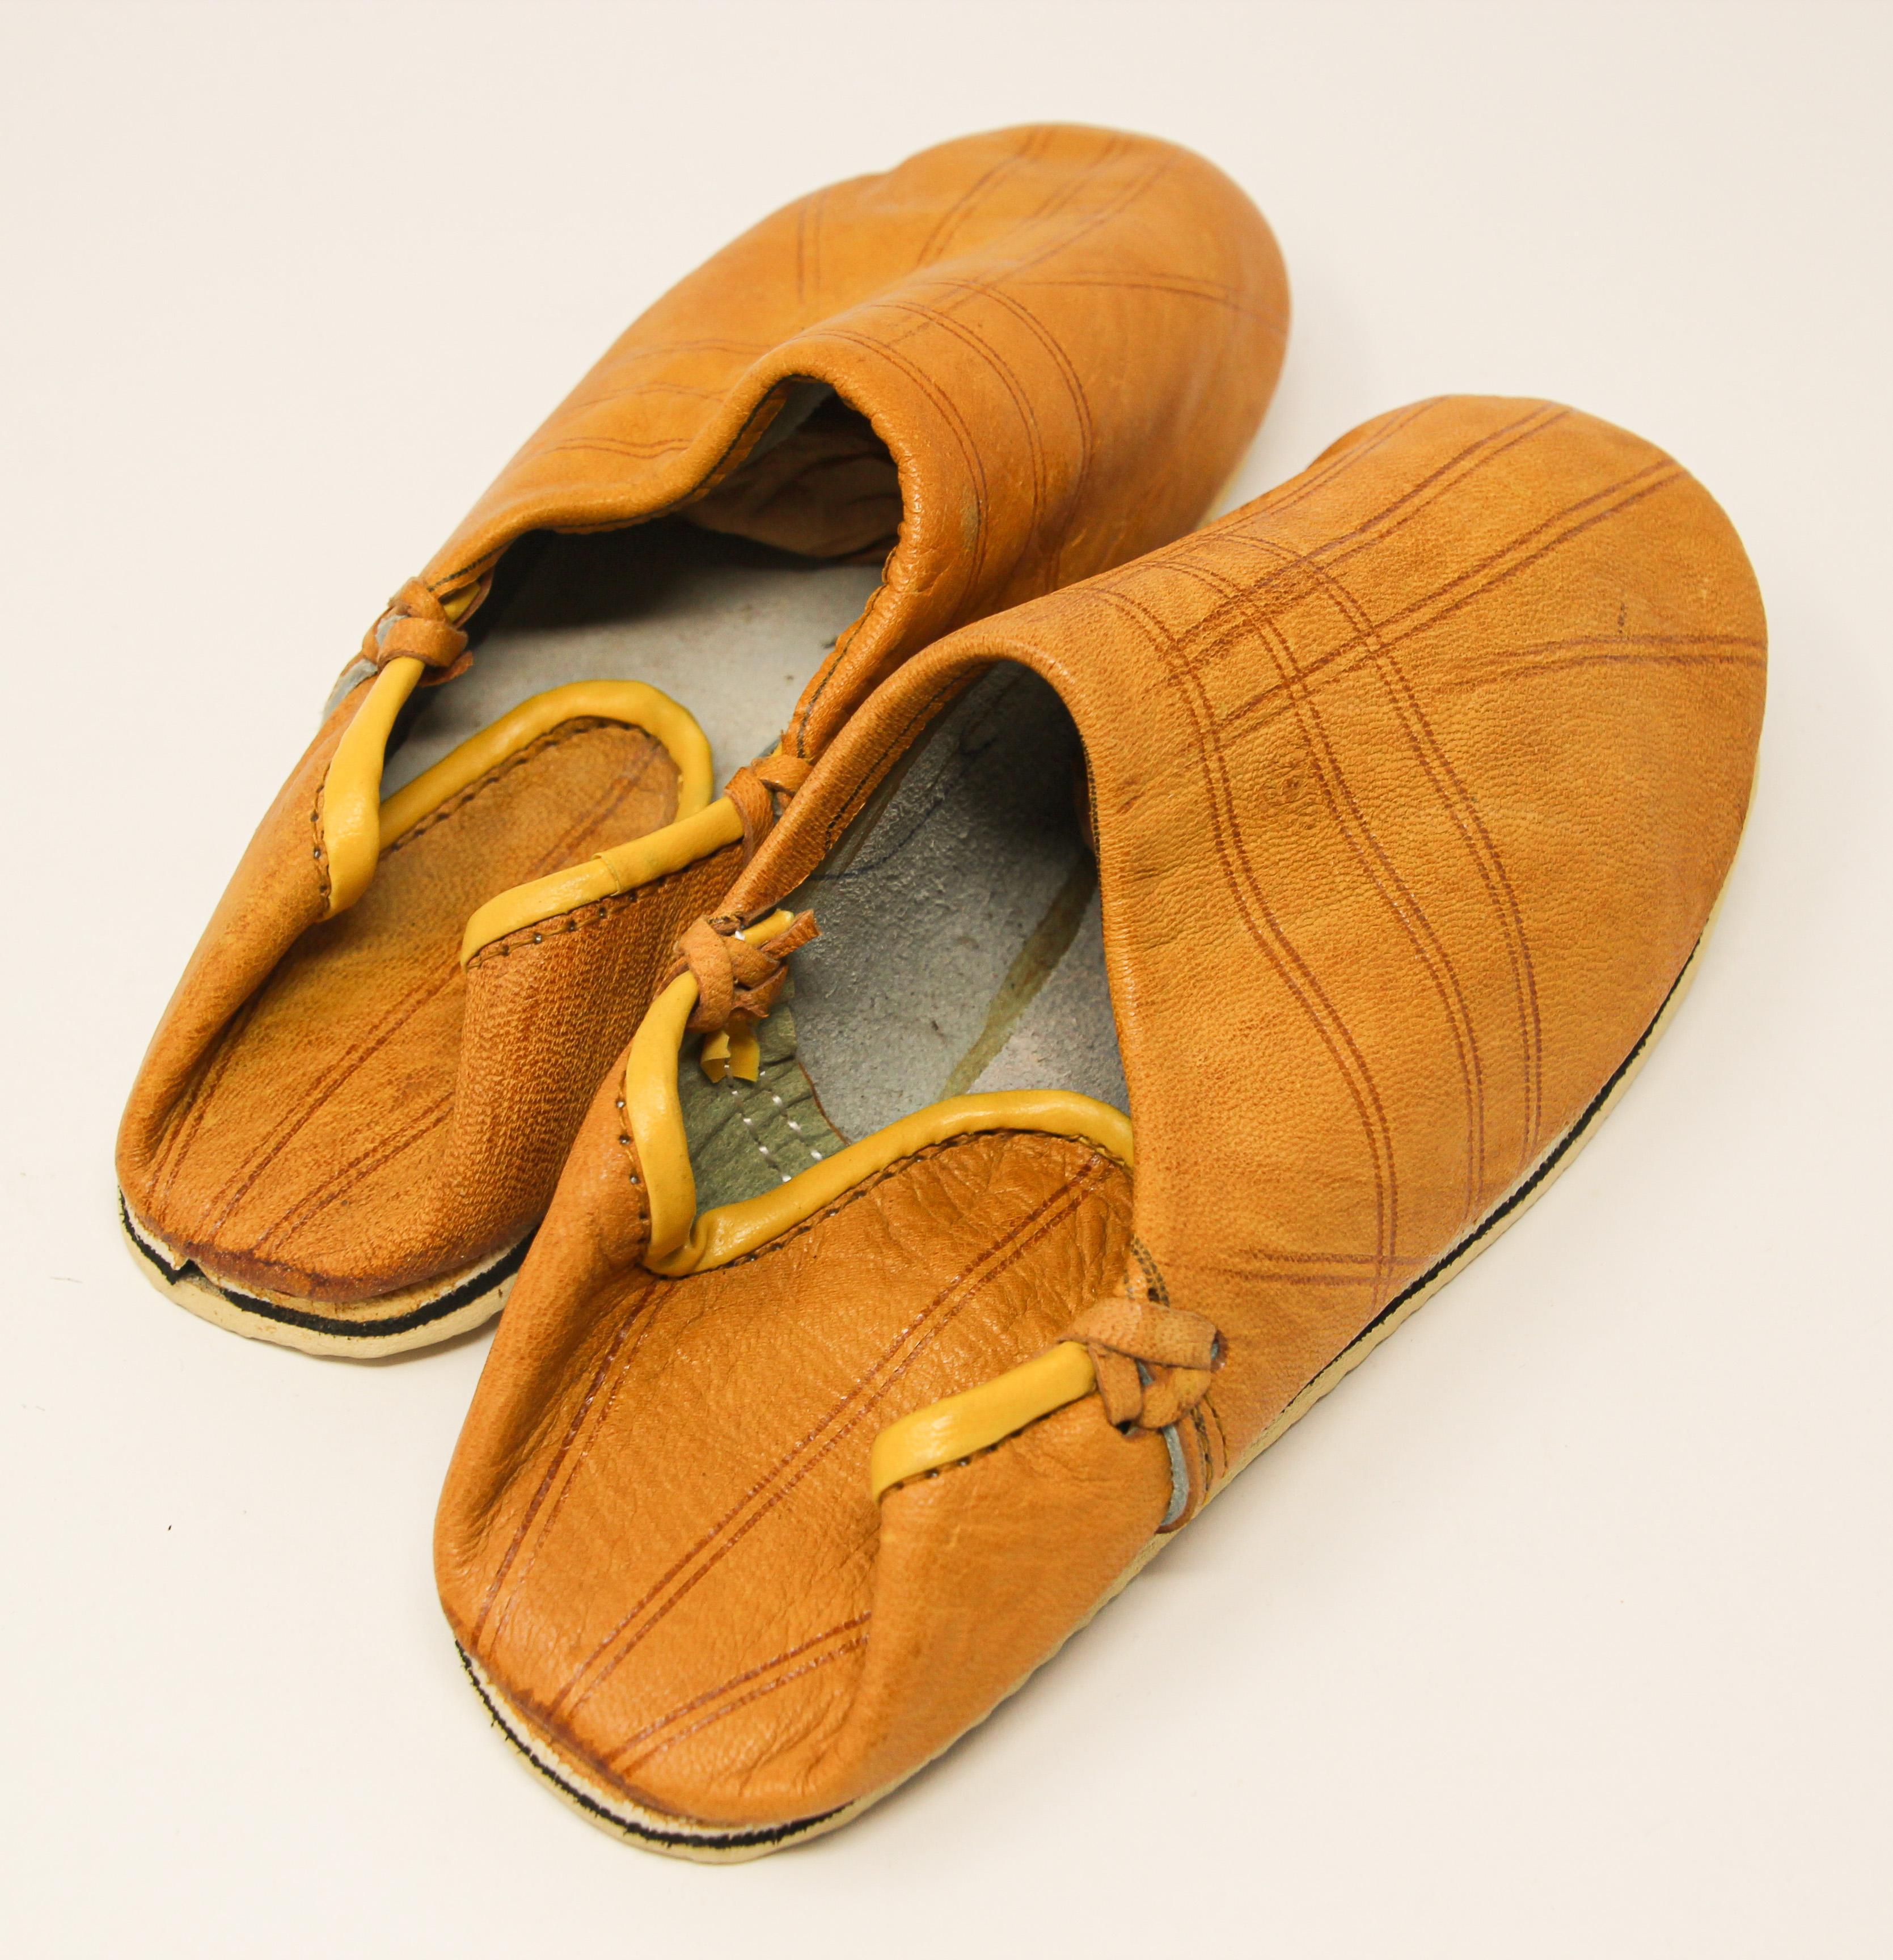 Marokkanische ethnische gelbe Lederpantoffeln sind handgefertigt.
Handgefertigt in Fez, Marokko.
Sie werden die marokkanischen Babouches nicht mehr von den Füßen nehmen wollen.
Marokkanische Schuhe für das Schwimmbad oder den Strand, gerade